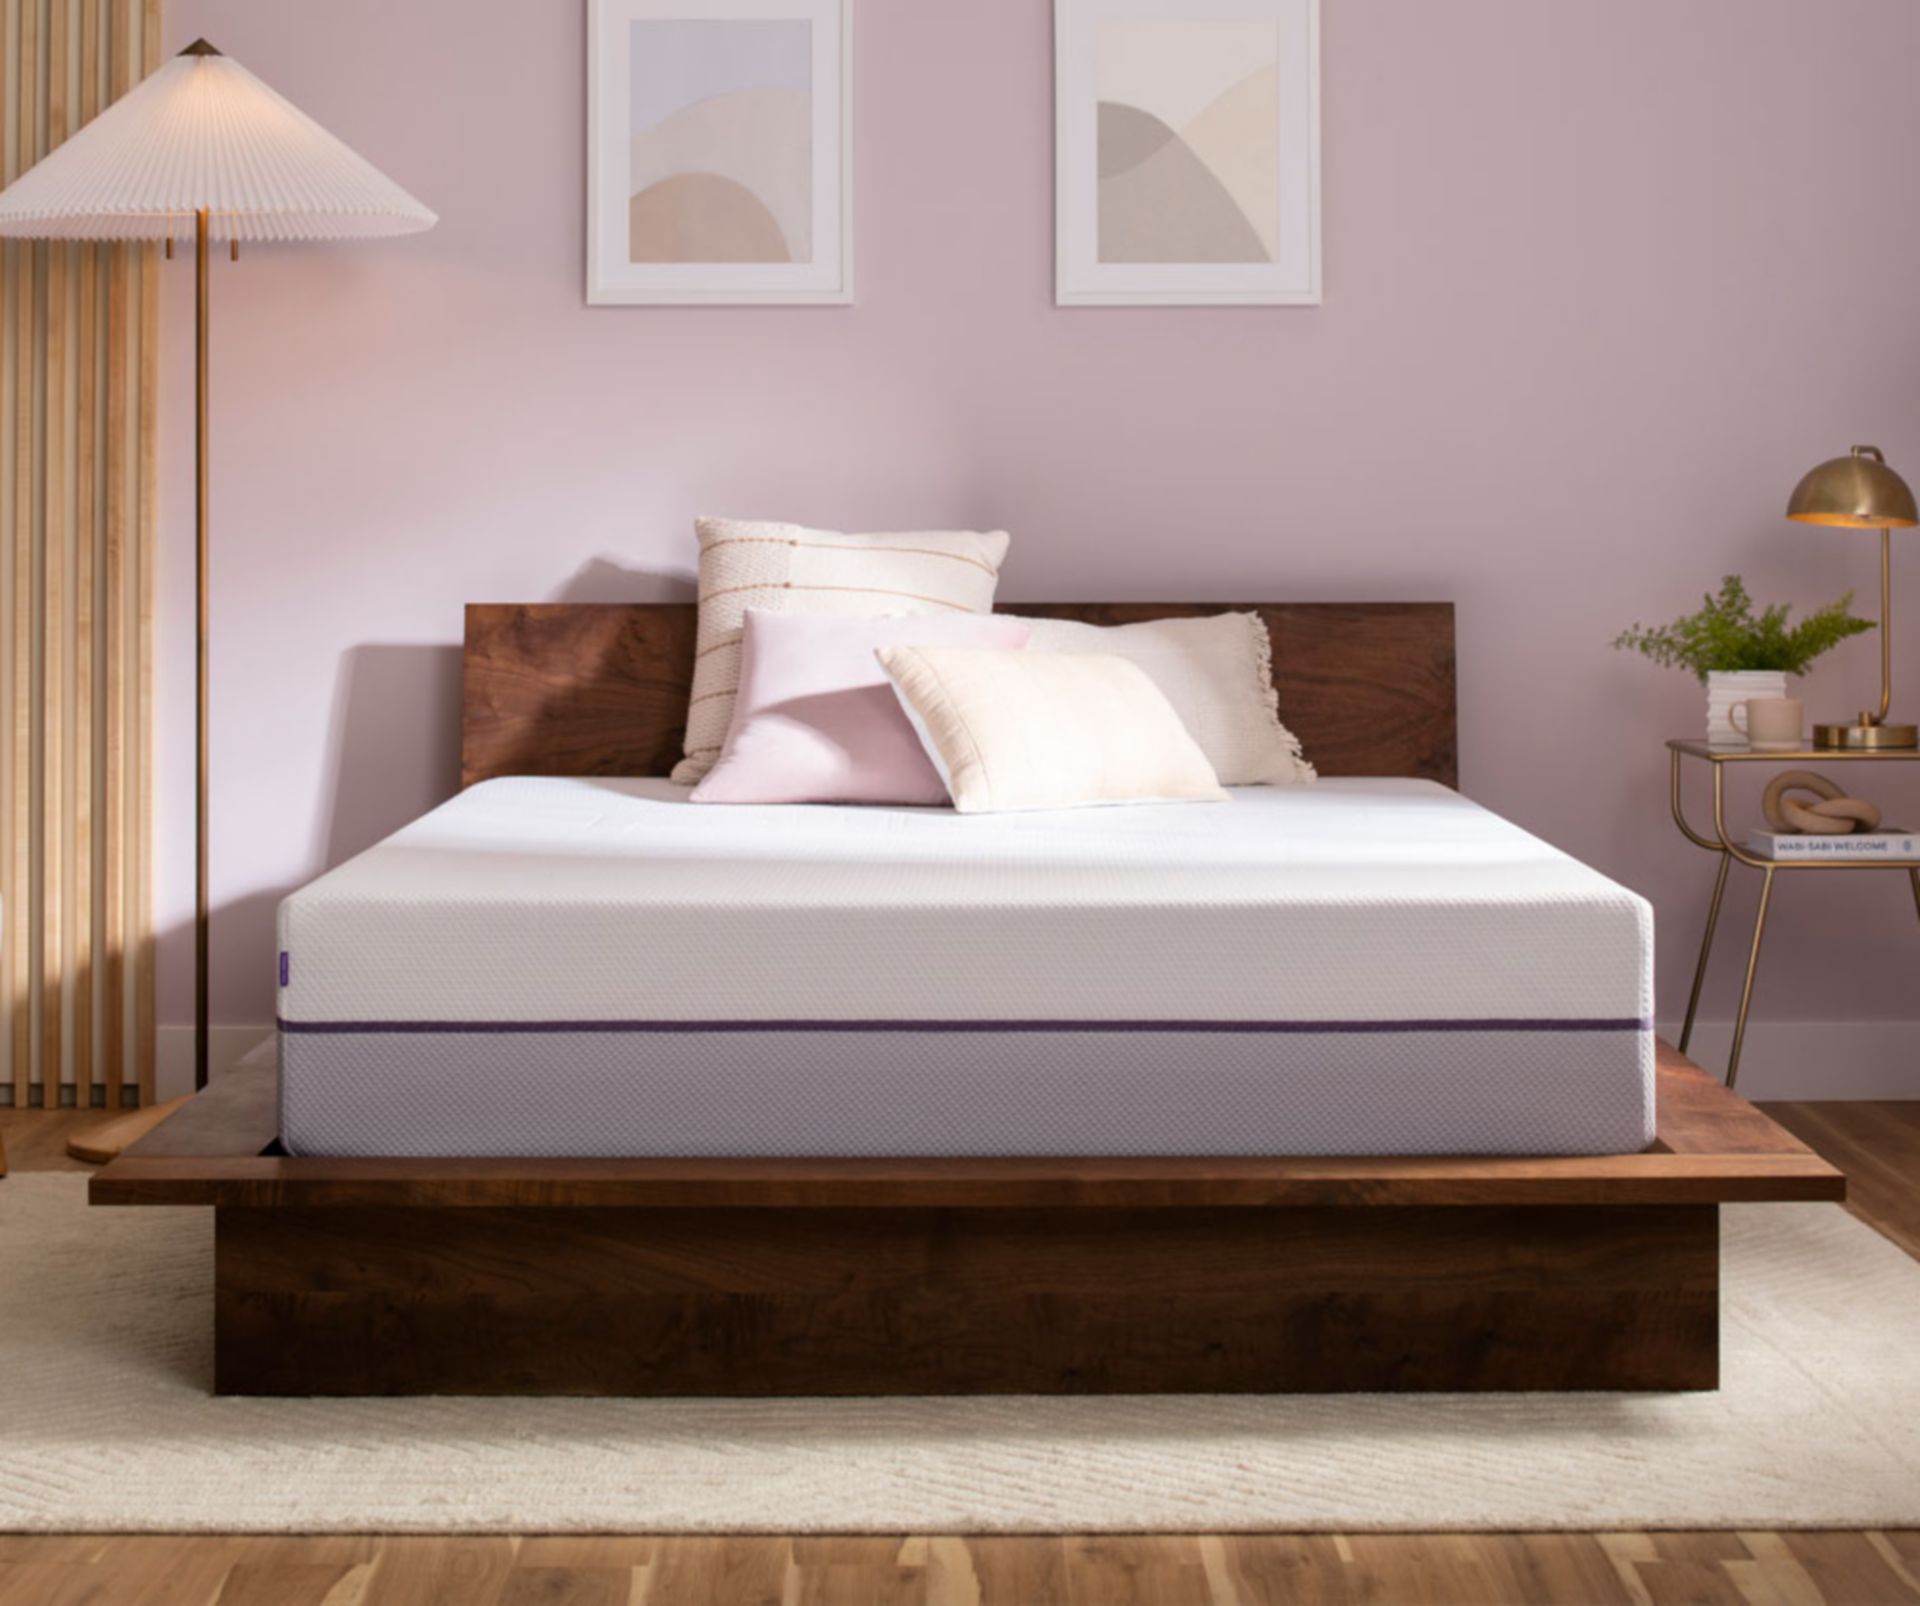 Purple Plus Mattress in Interior Designed Room